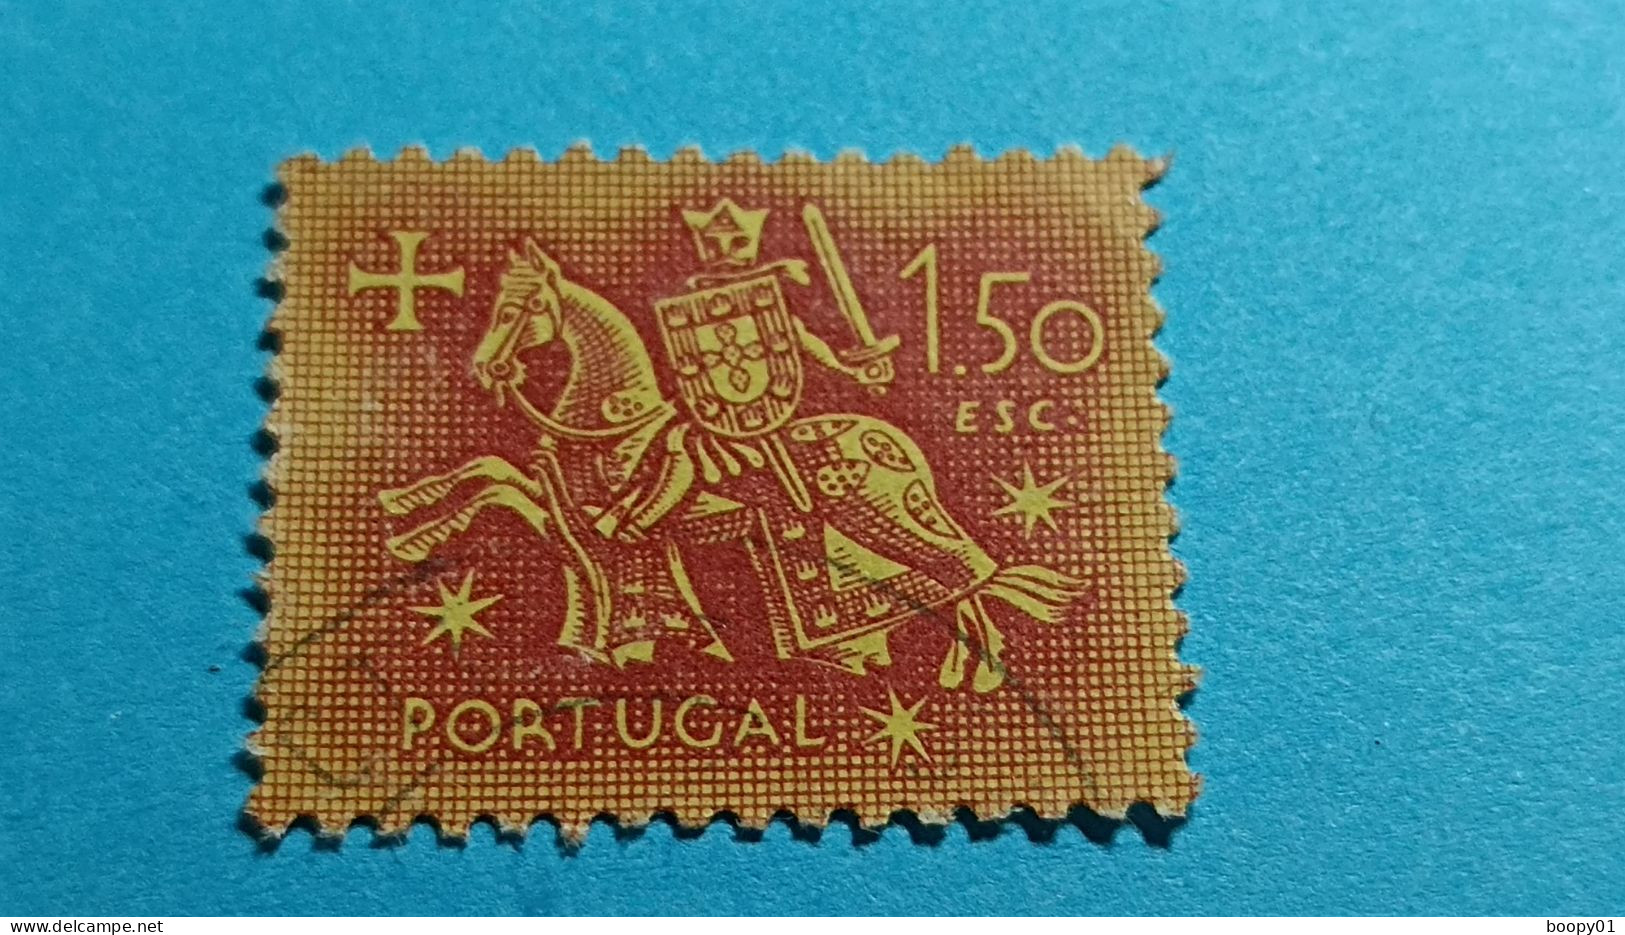 PORTUGAL - Timbre 1953 : Sceau équestre De Denis 1er De Portugal (Dinis Ou Diniz) - 1.50 Escudo - Usati